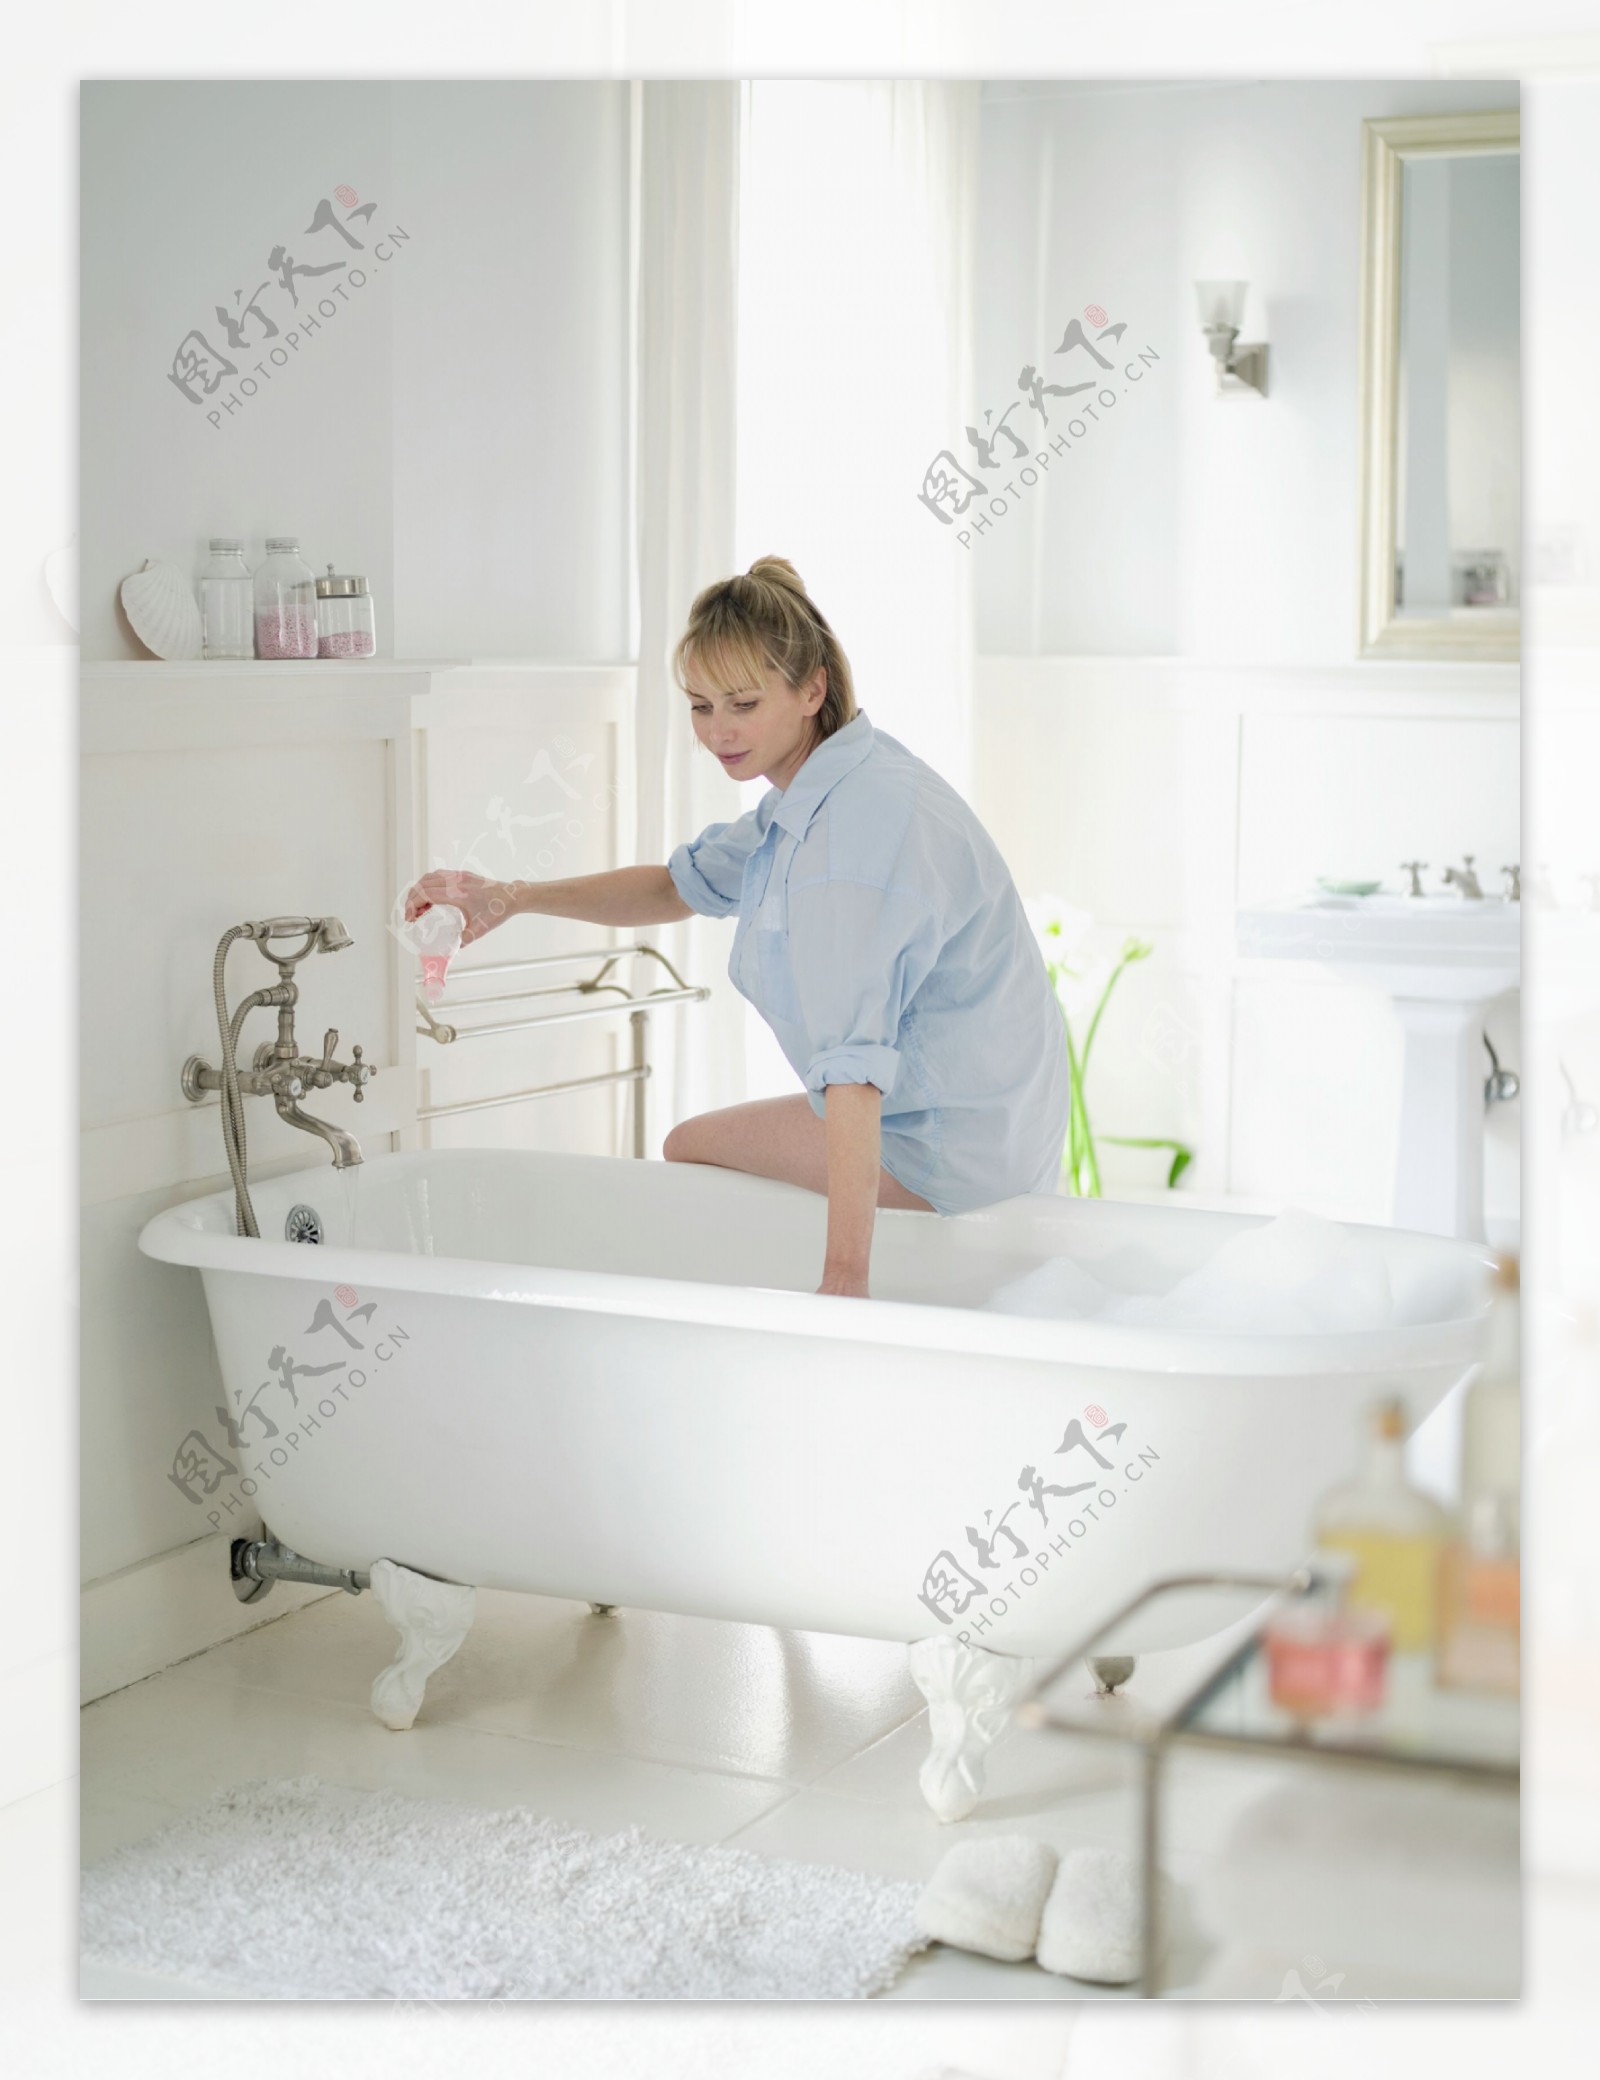 坐在浴缸边放水的女人图片